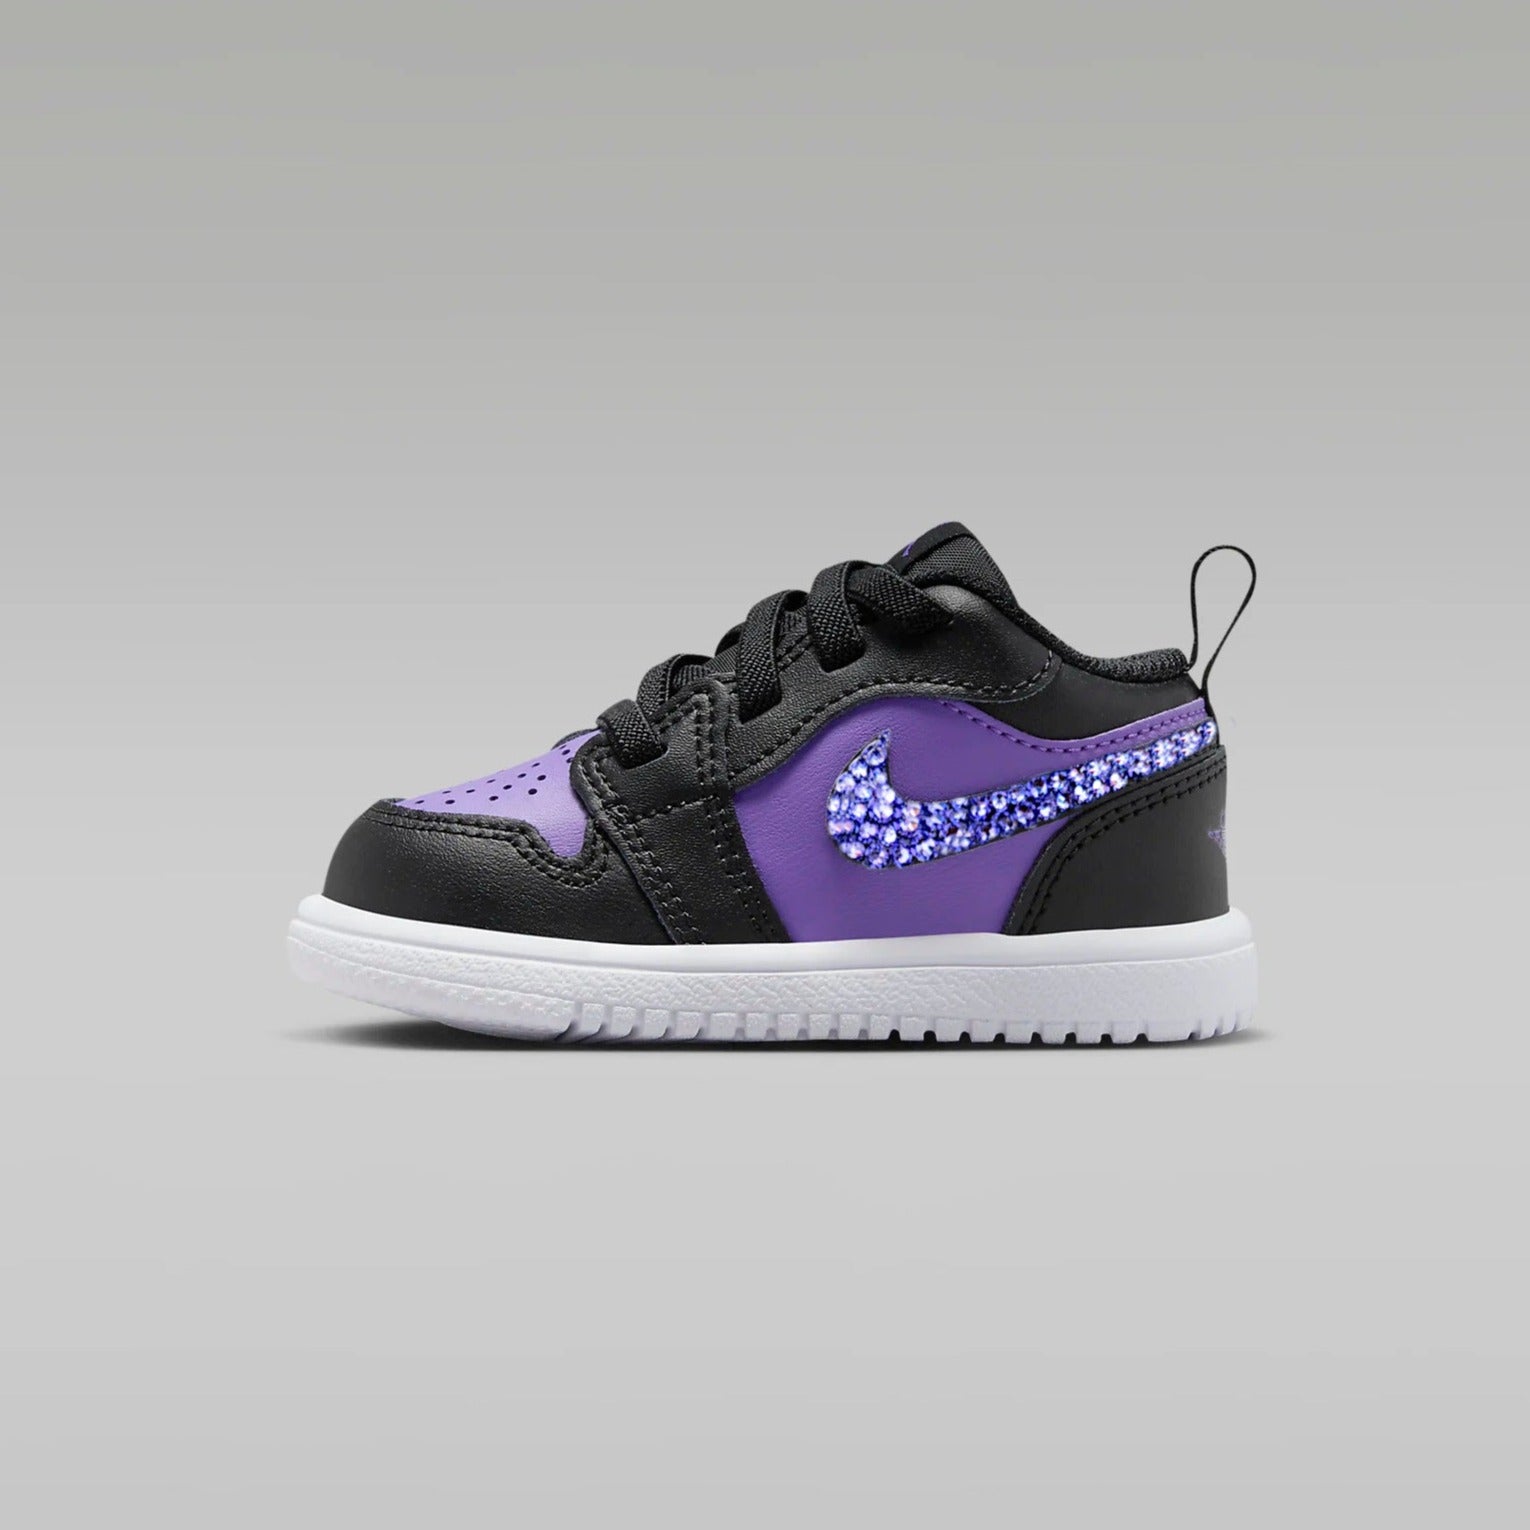 Air Jordan 1 Low Toddler (Purple/ Black)